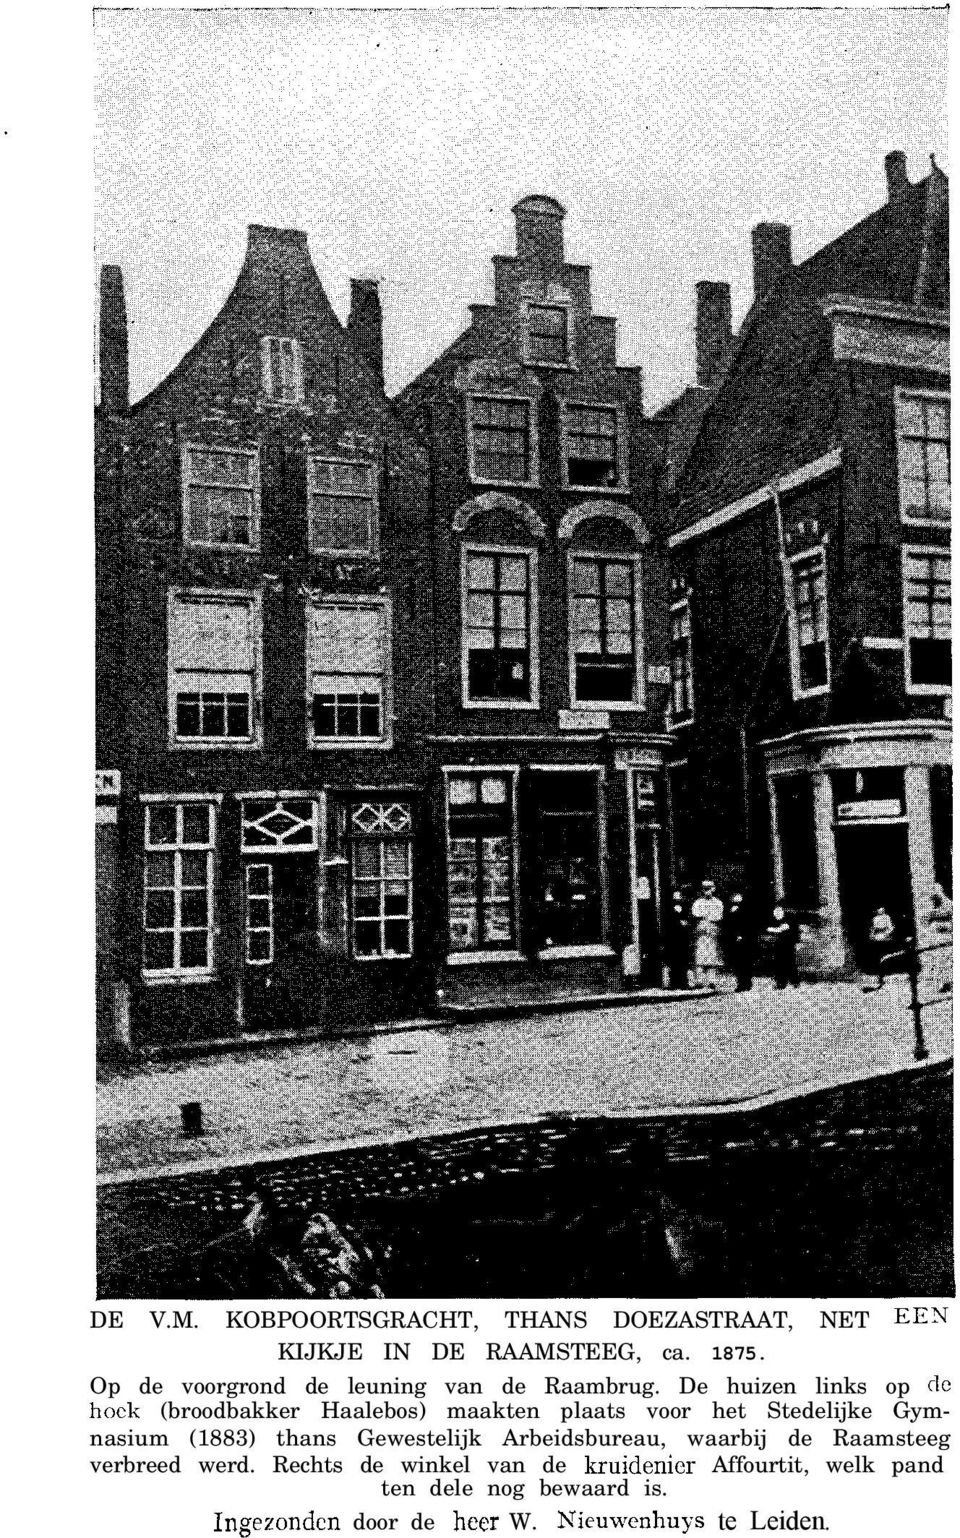 De huizen links op dc hoek (broodbakker Haalebos) maakten plaats voor het Stedelijke Gymnasium (1883) thans